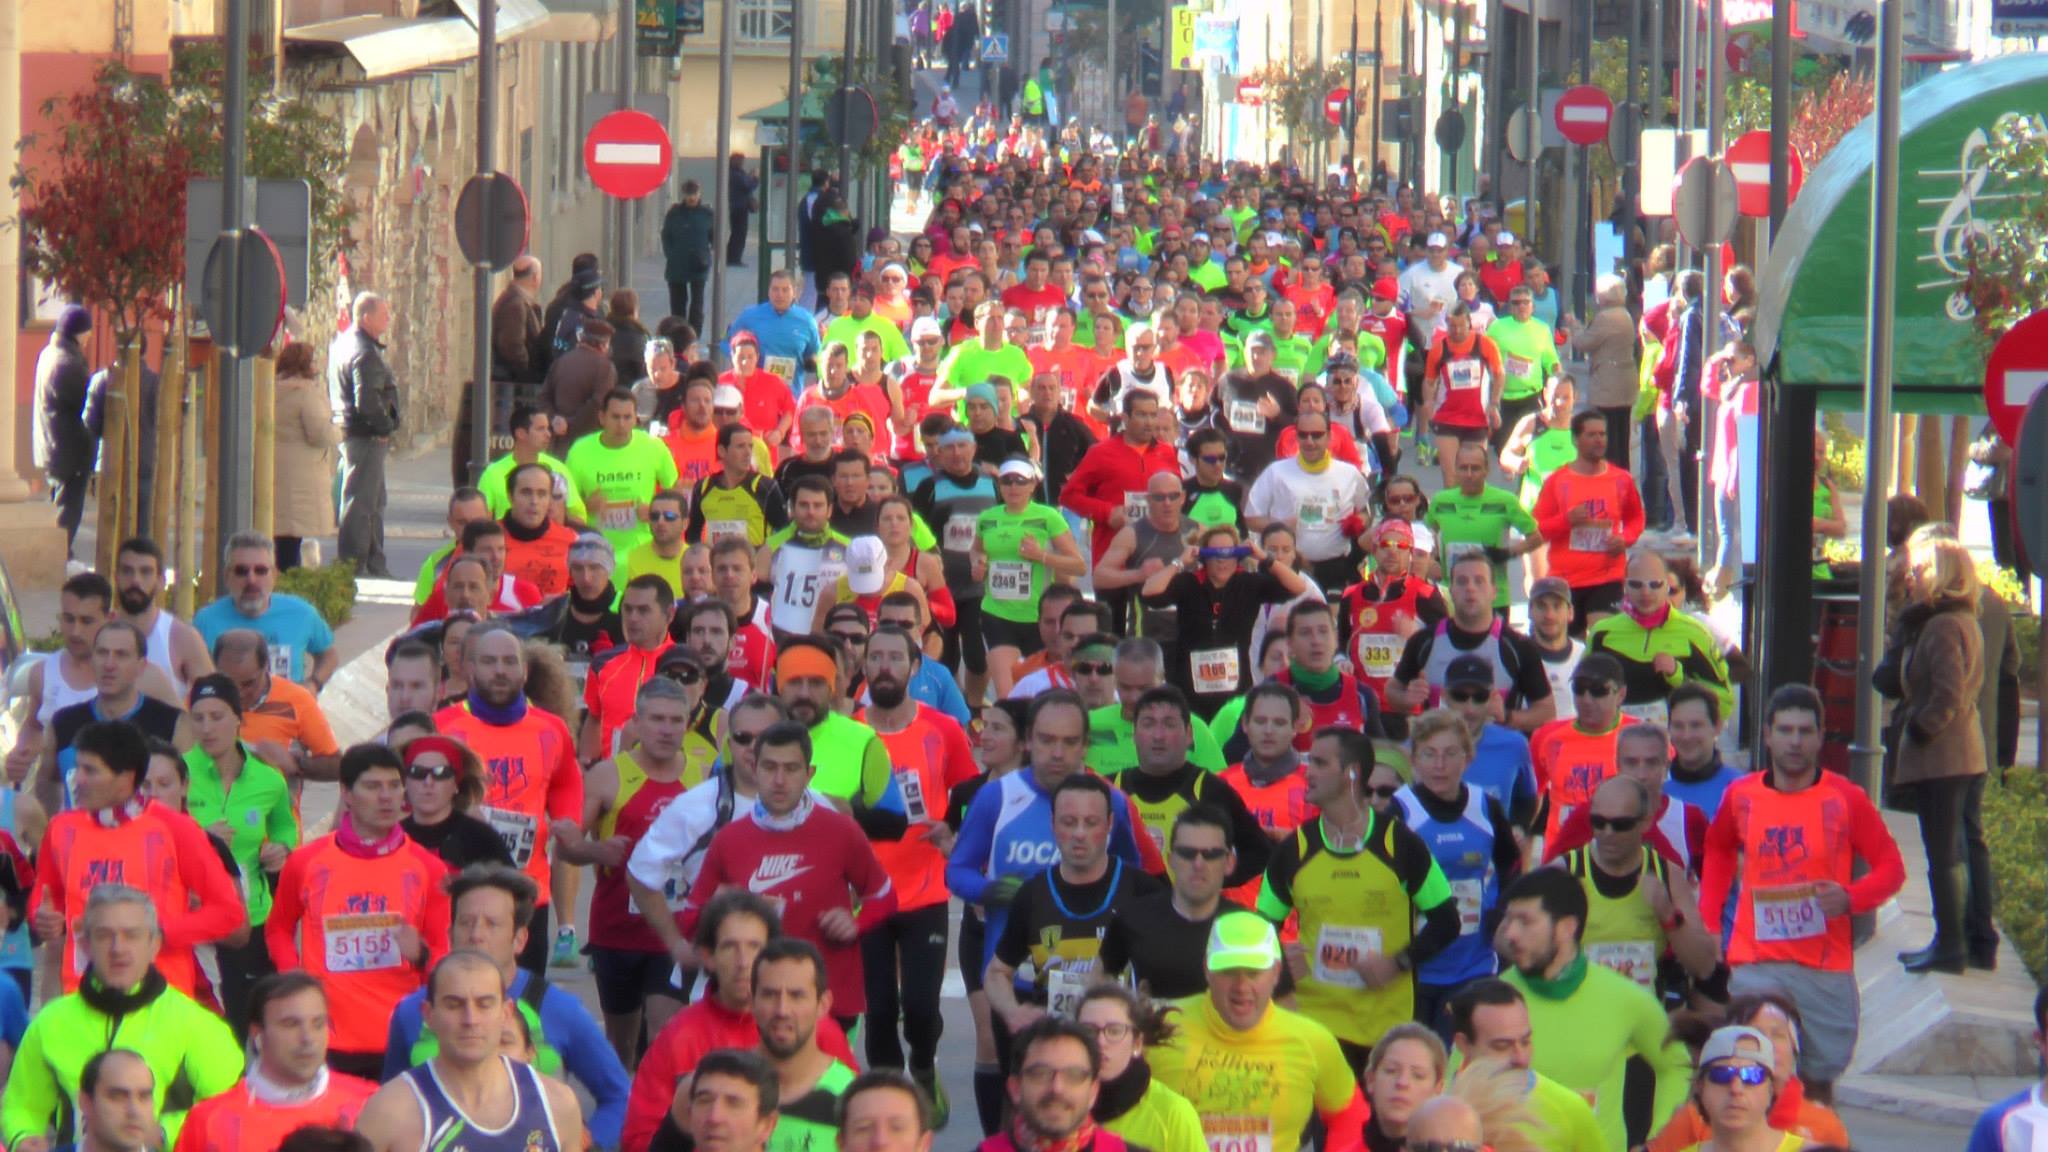 La Media Maratón de Valdepeñas, la segunda mejor de España según el portal especializado Runedia.com